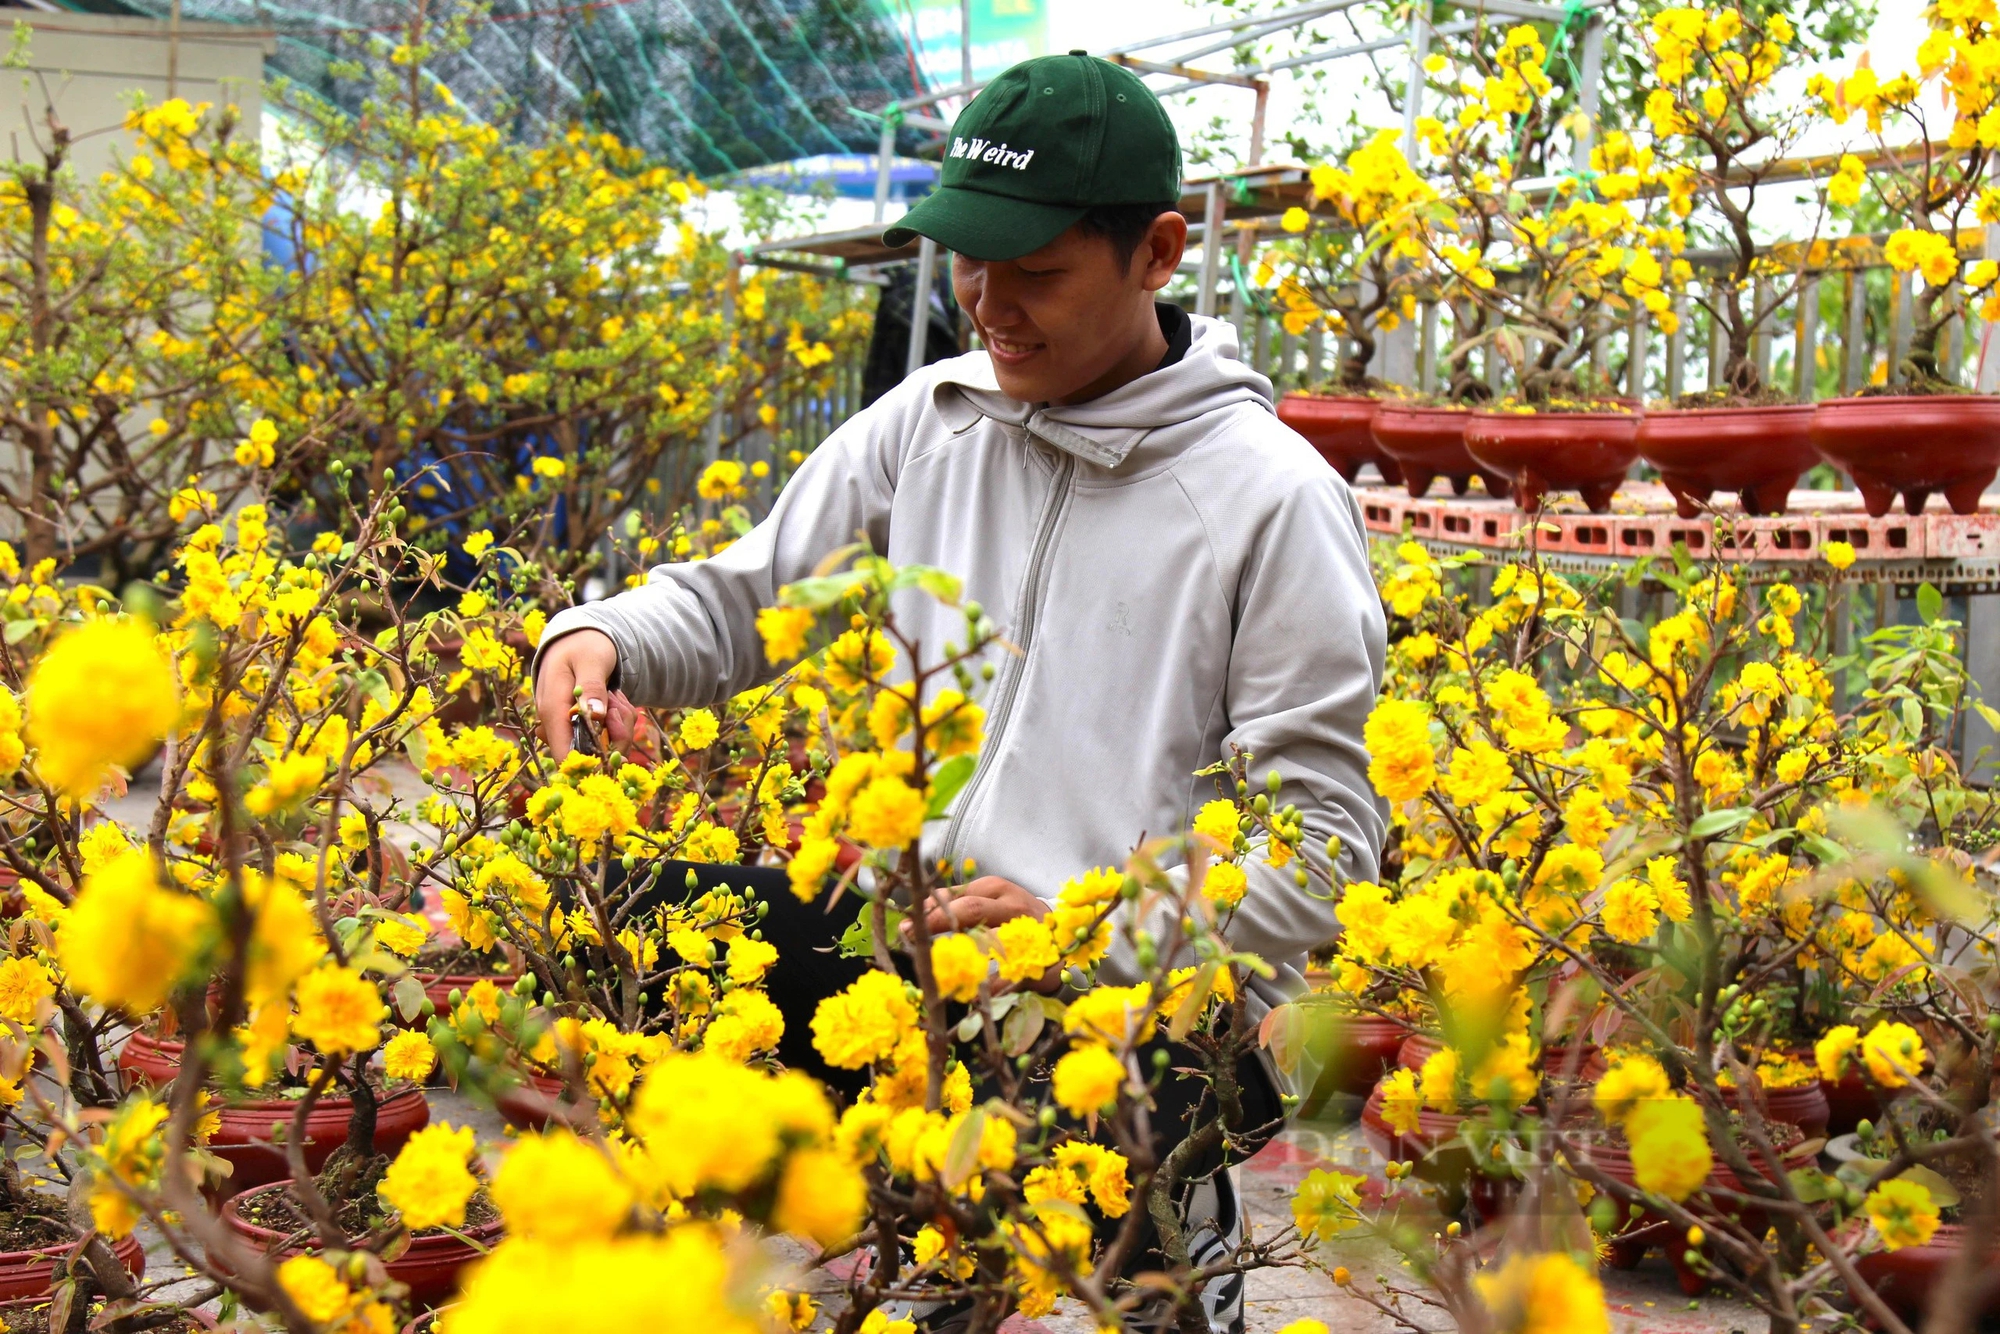 Hoa mai vàng bung nở rực rỡ tại chợ hoa Cần Thơ- Ảnh 6.